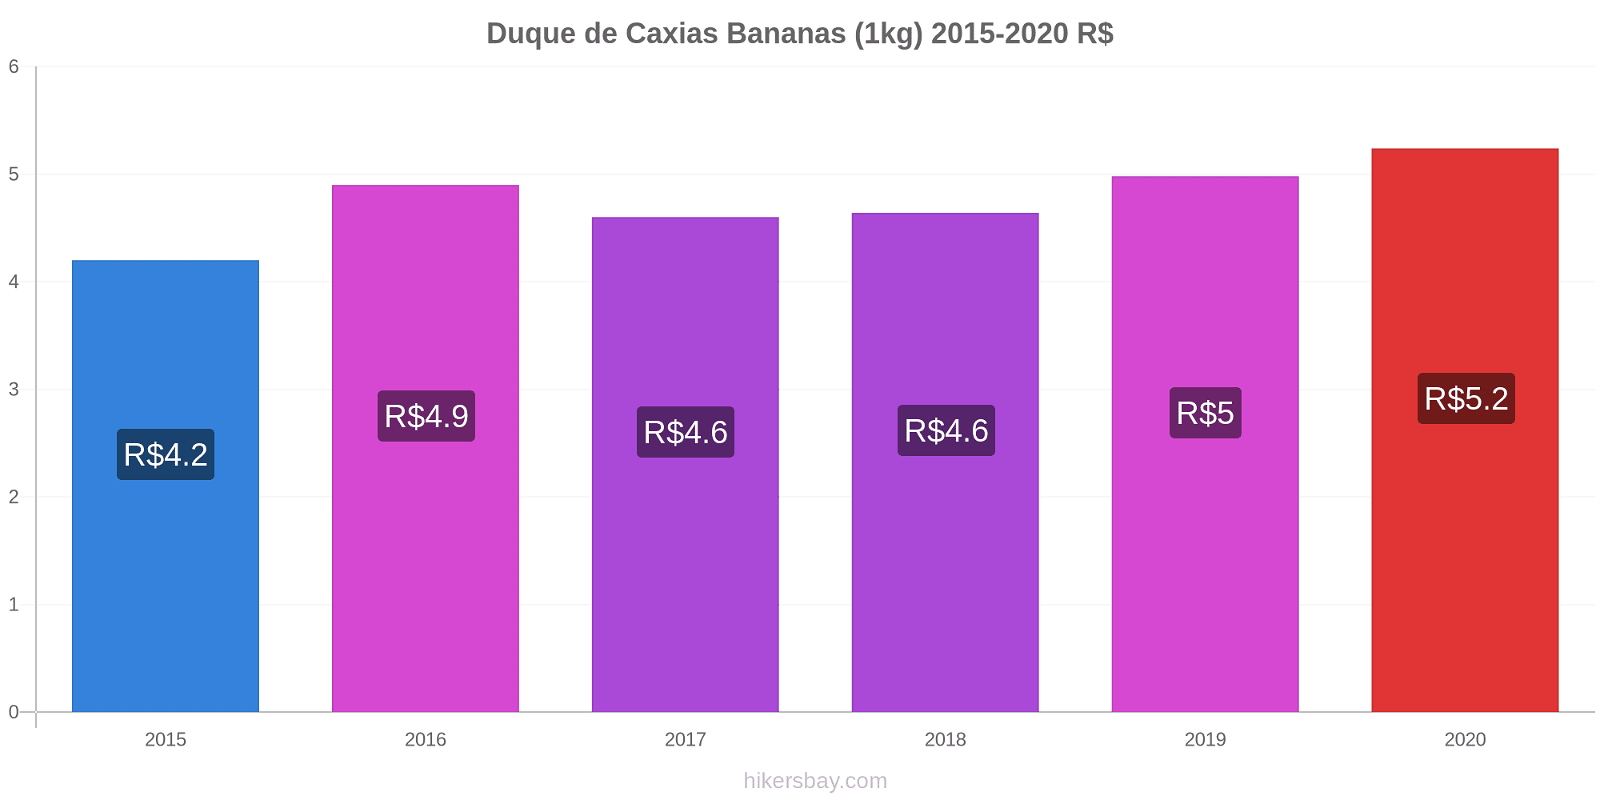 Duque de Caxias variação de preço Banana (1kg) hikersbay.com